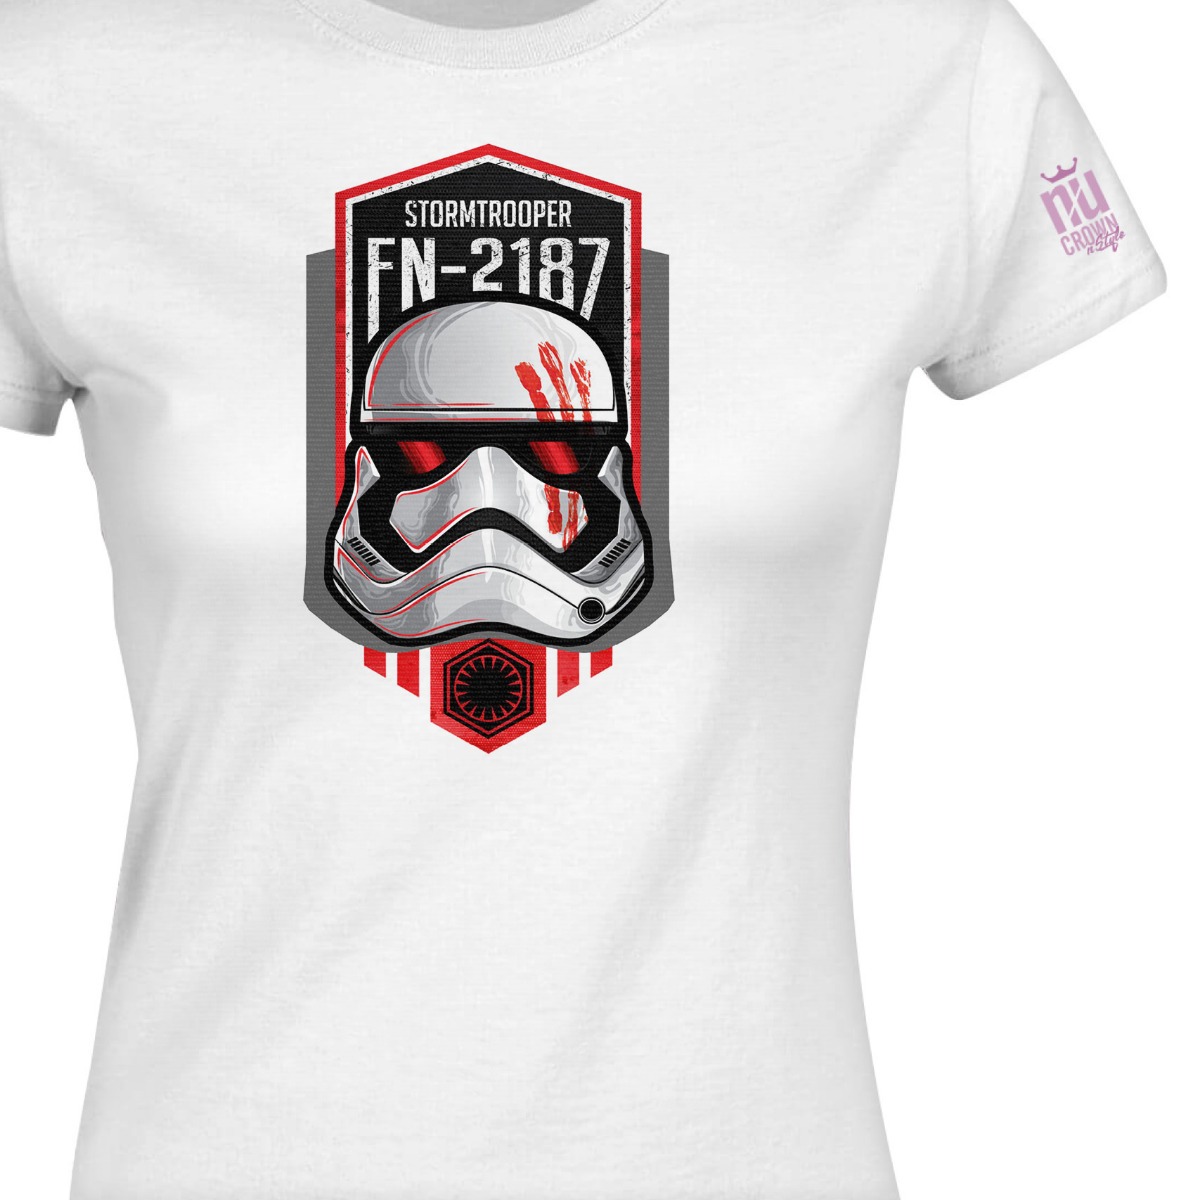 Oficial de Star Wars Stormtrooper Dibujo Camiseta Blanca nuevo